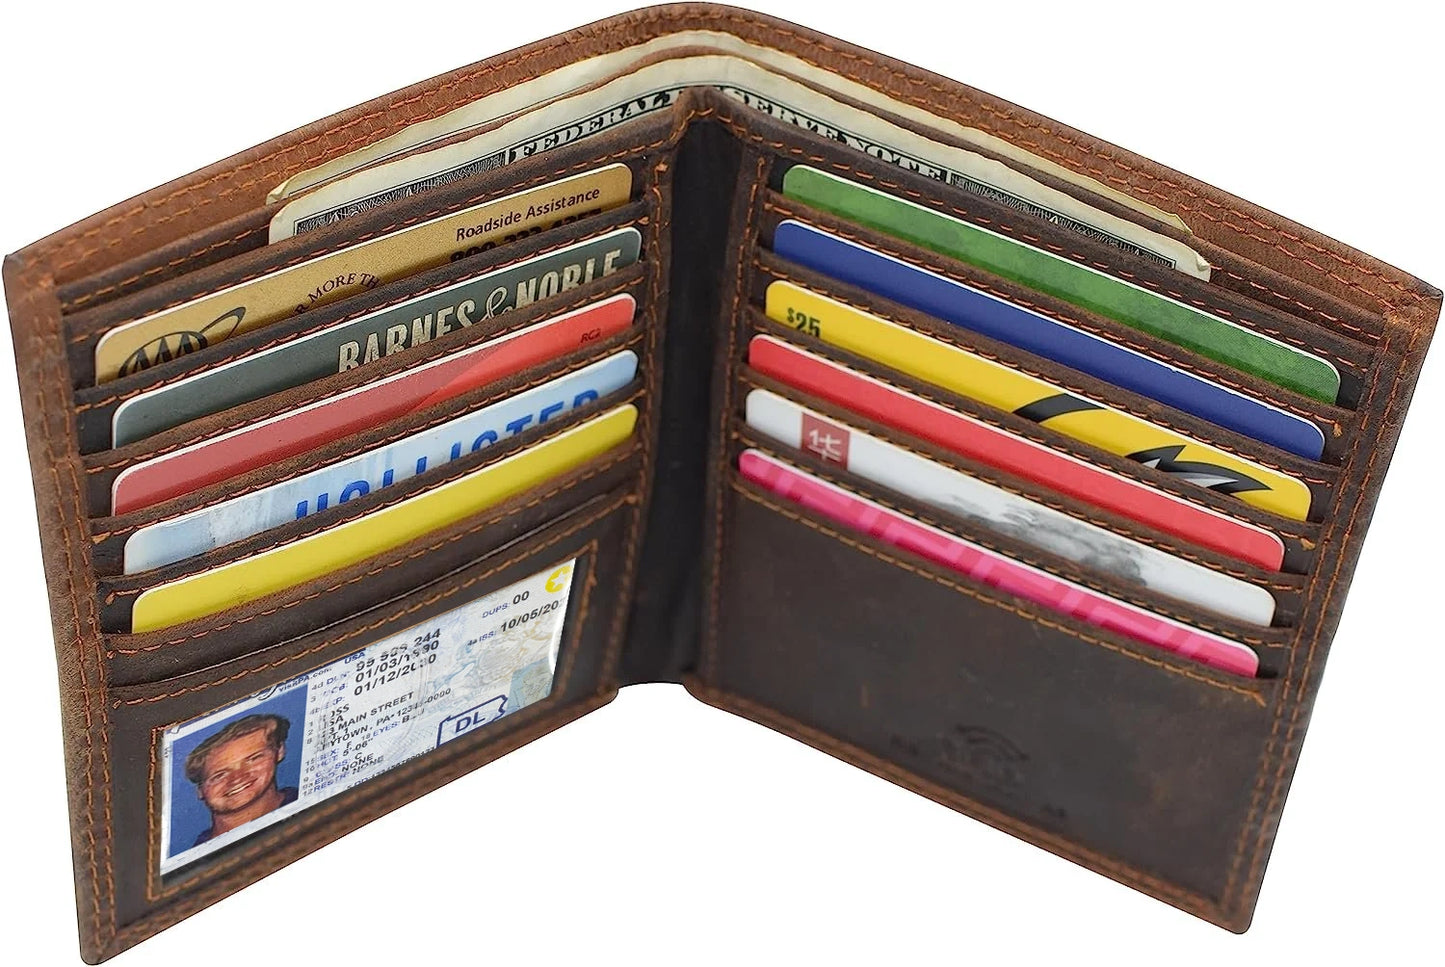 Vintage Leather Men's Bifold Hipster Wallet Credit Card Holder Airtag Case